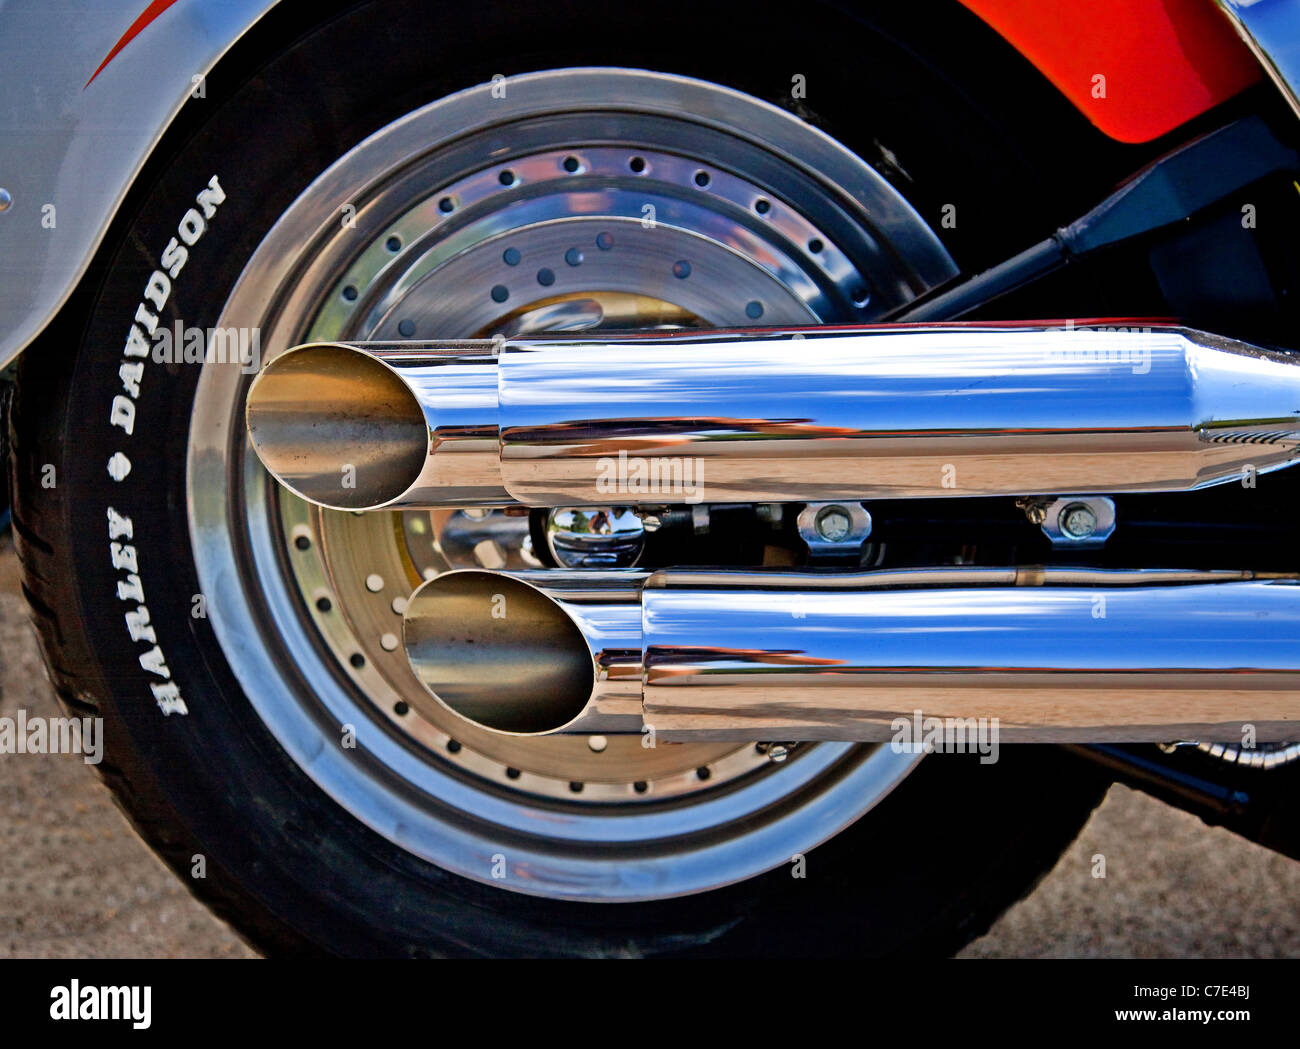 Roue arrière et tuyaux d'échappement brillants d'une moto Harley Davidson immaculée Banque D'Images